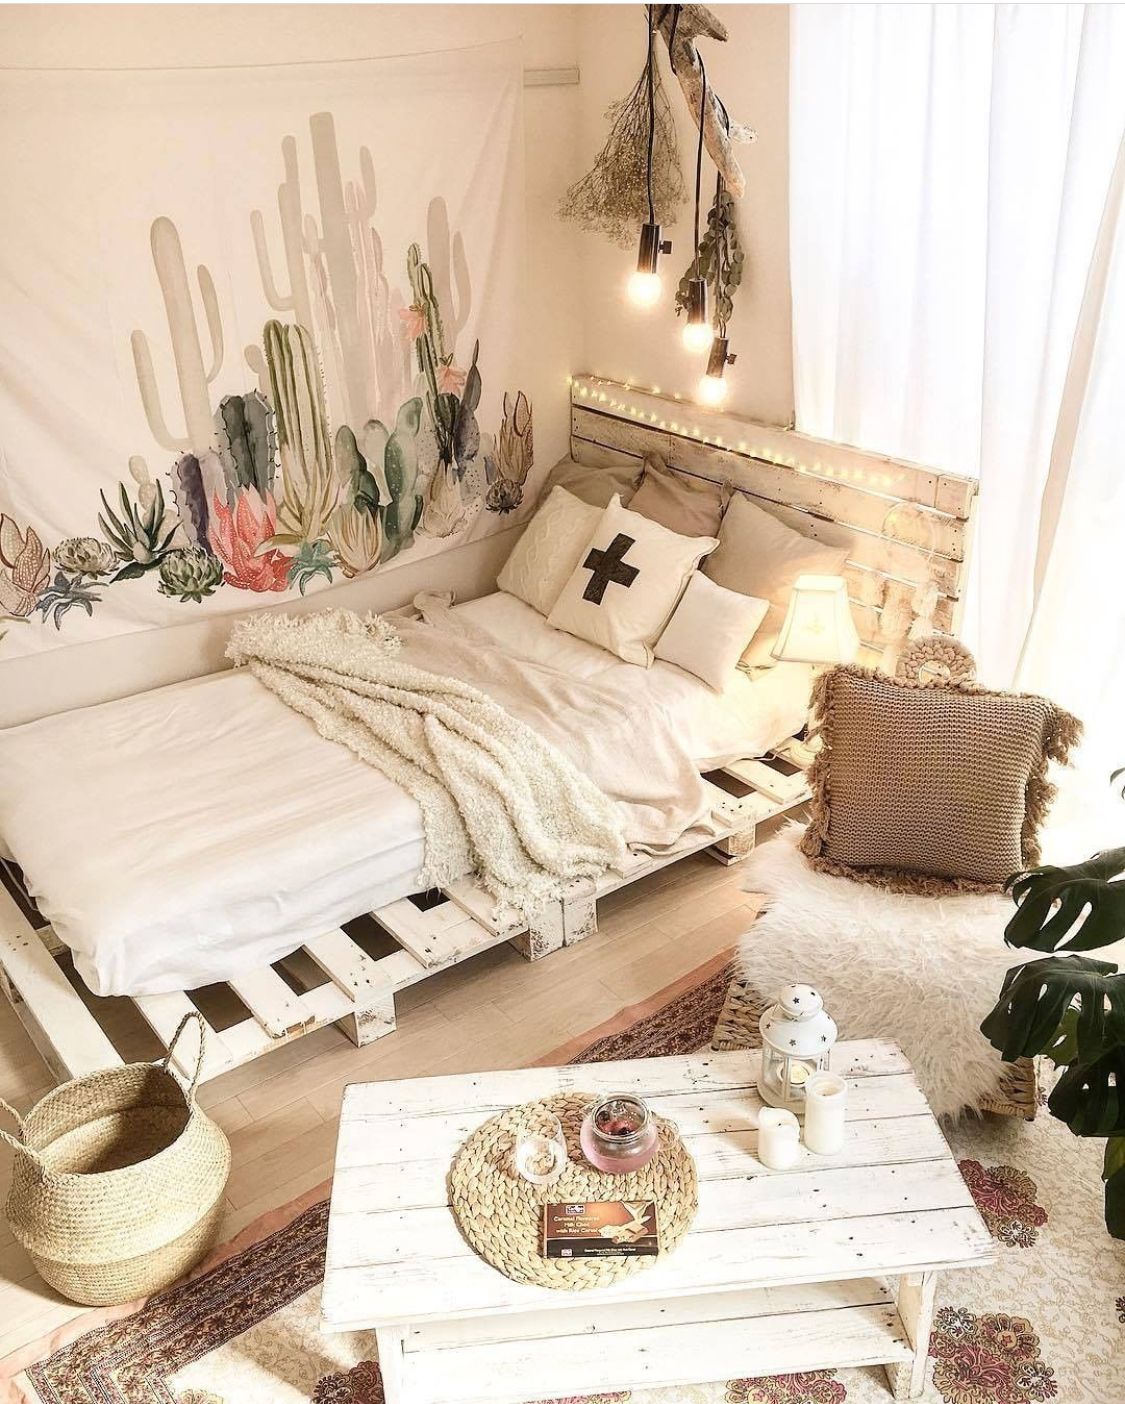 Làm mới phòng ngủ với muôn kiểu giường pallet xinh độc lạ, được nhiều chị em “nghiện nhà” chọn lựa - Ảnh 7.